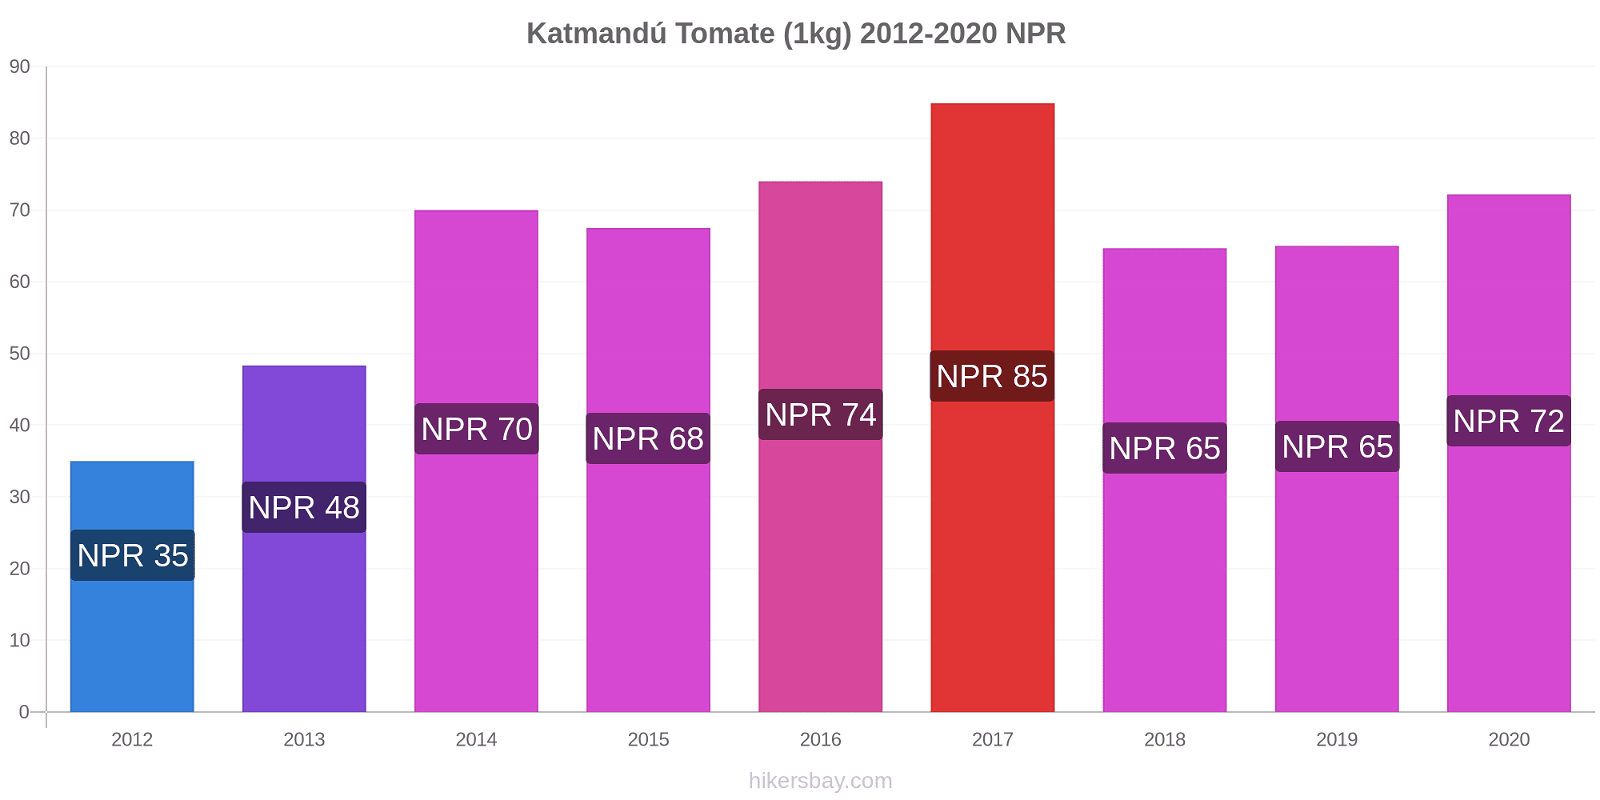 Katmandú cambios de precios Tomate (1kg) hikersbay.com